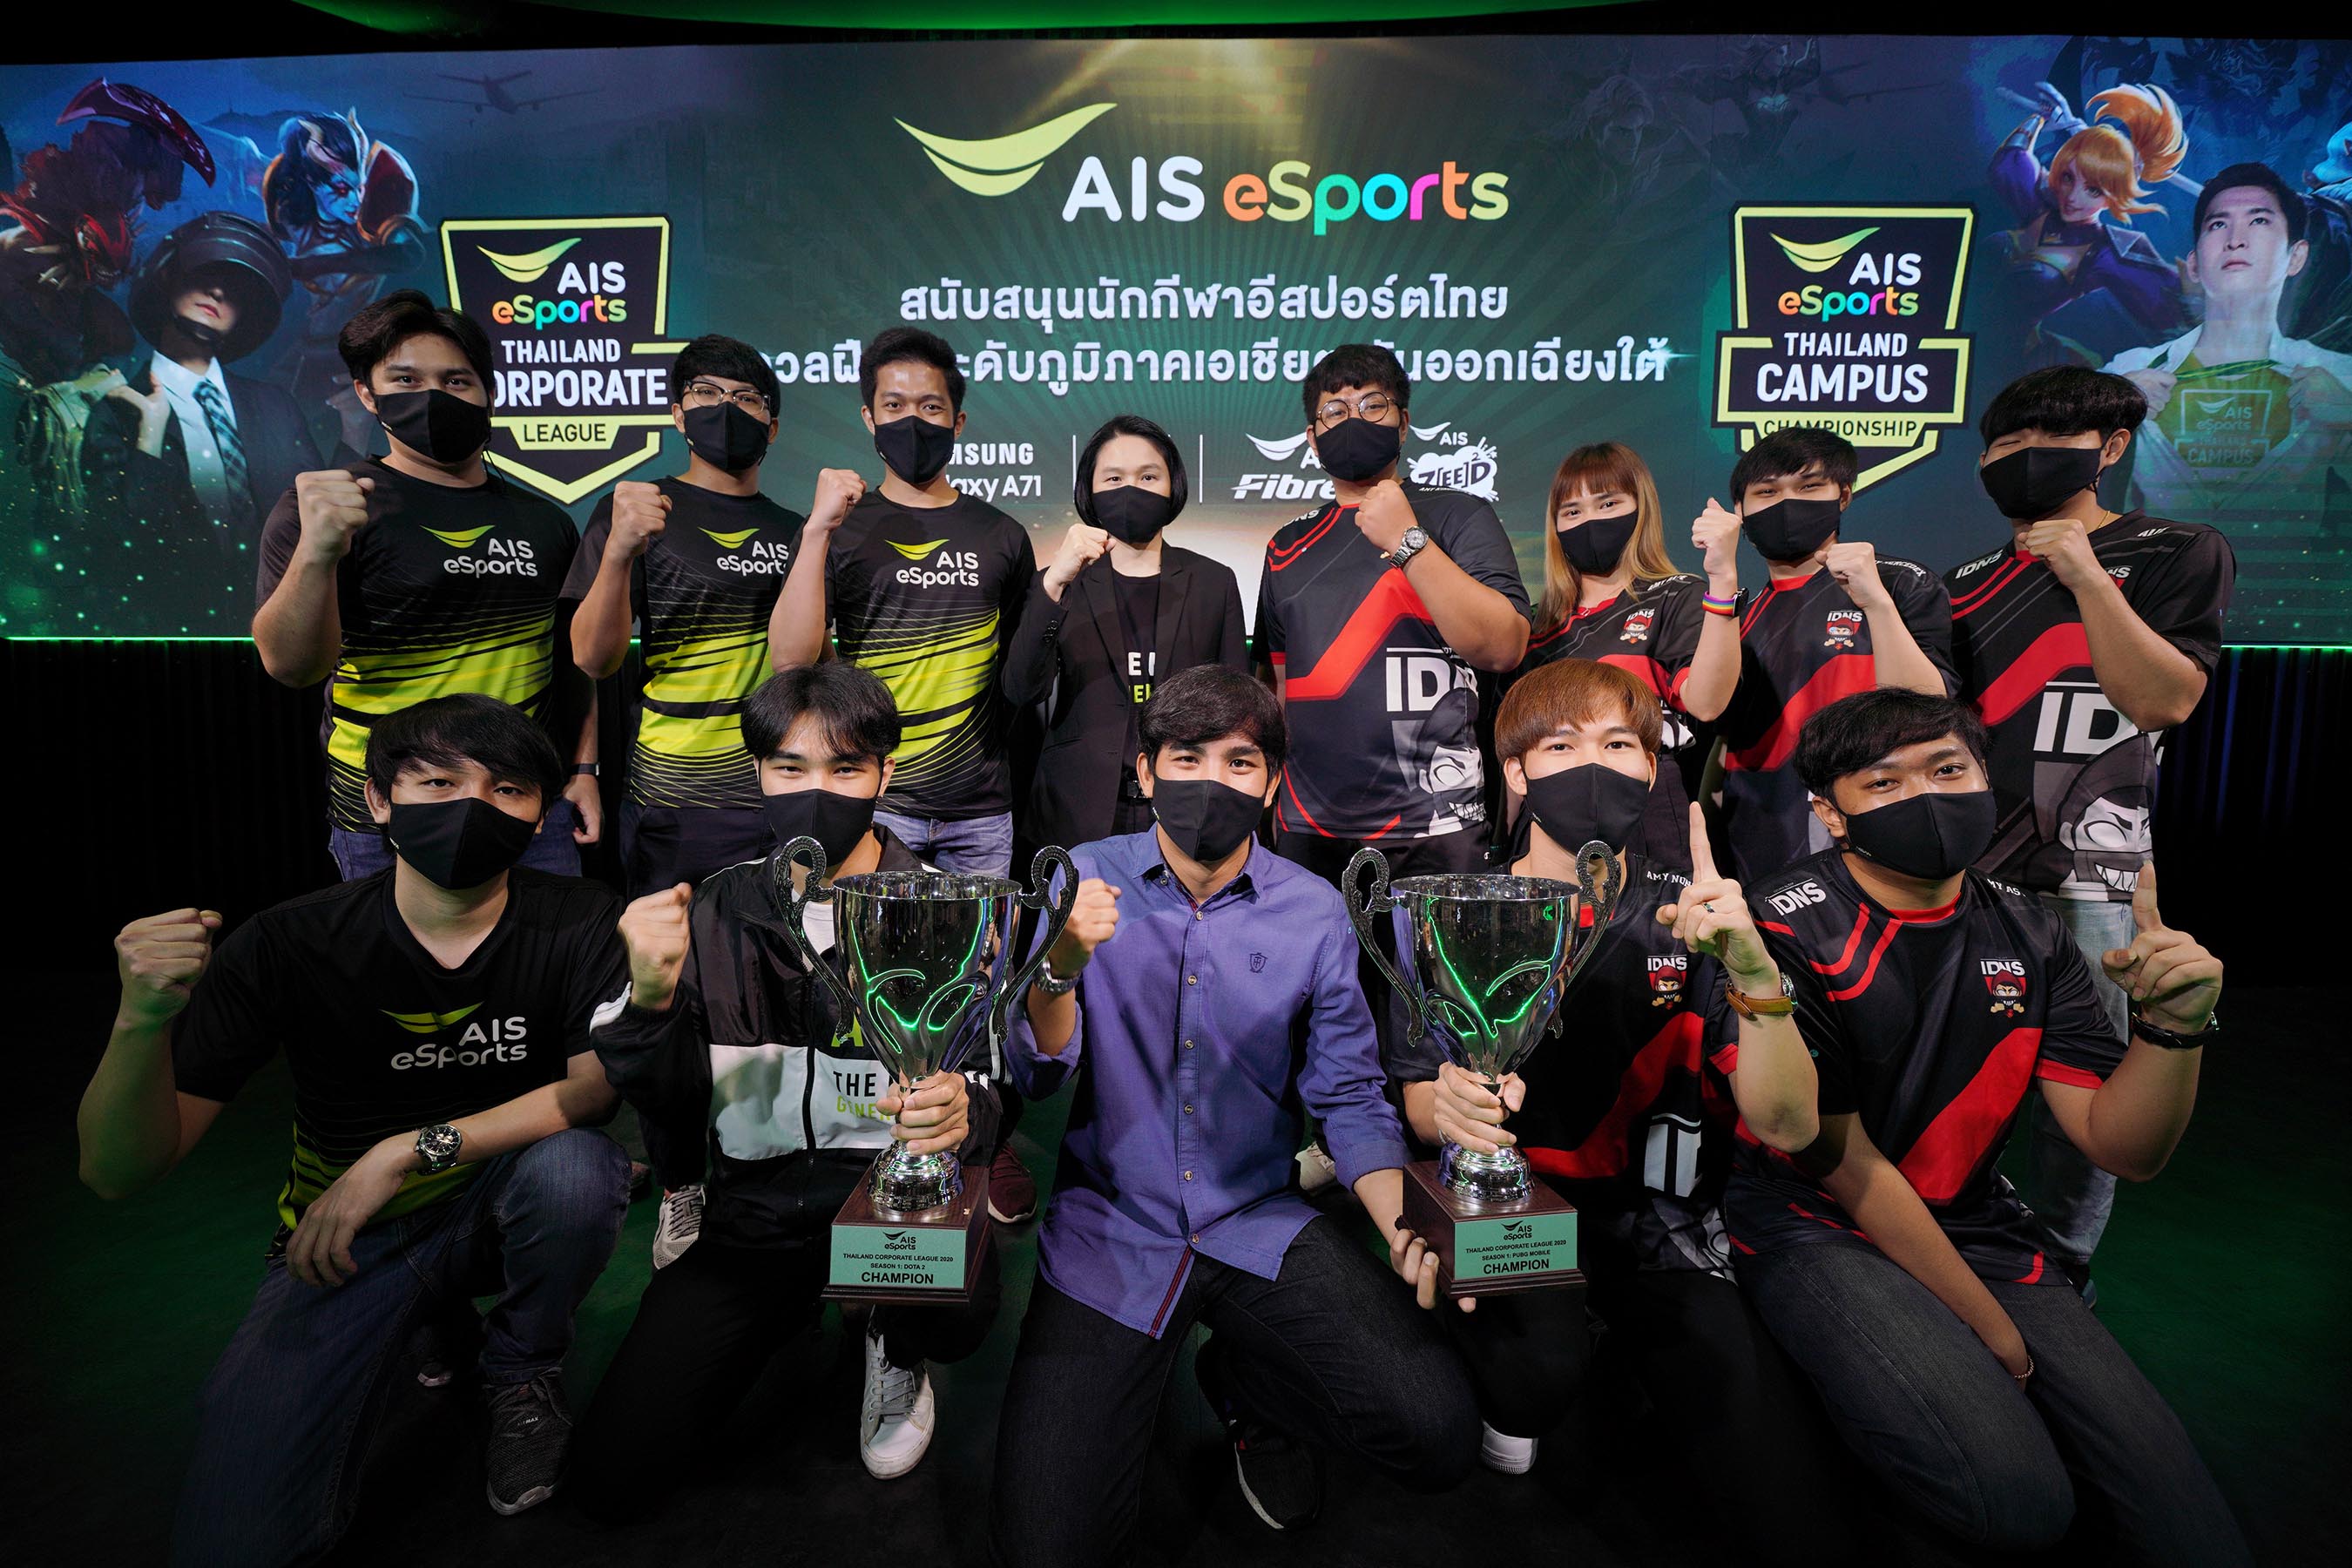 จัดเต็ม! AIS เปิดสนาม AIS eSports STUDIO หนุนนักกีฬาอีสปอร์ตไทยดวลฝีมือ เตรียมชิงชัยศึกอีสปอร์ตระดับภูมิภาคเอเชียตะวันออกเฉียงใต้